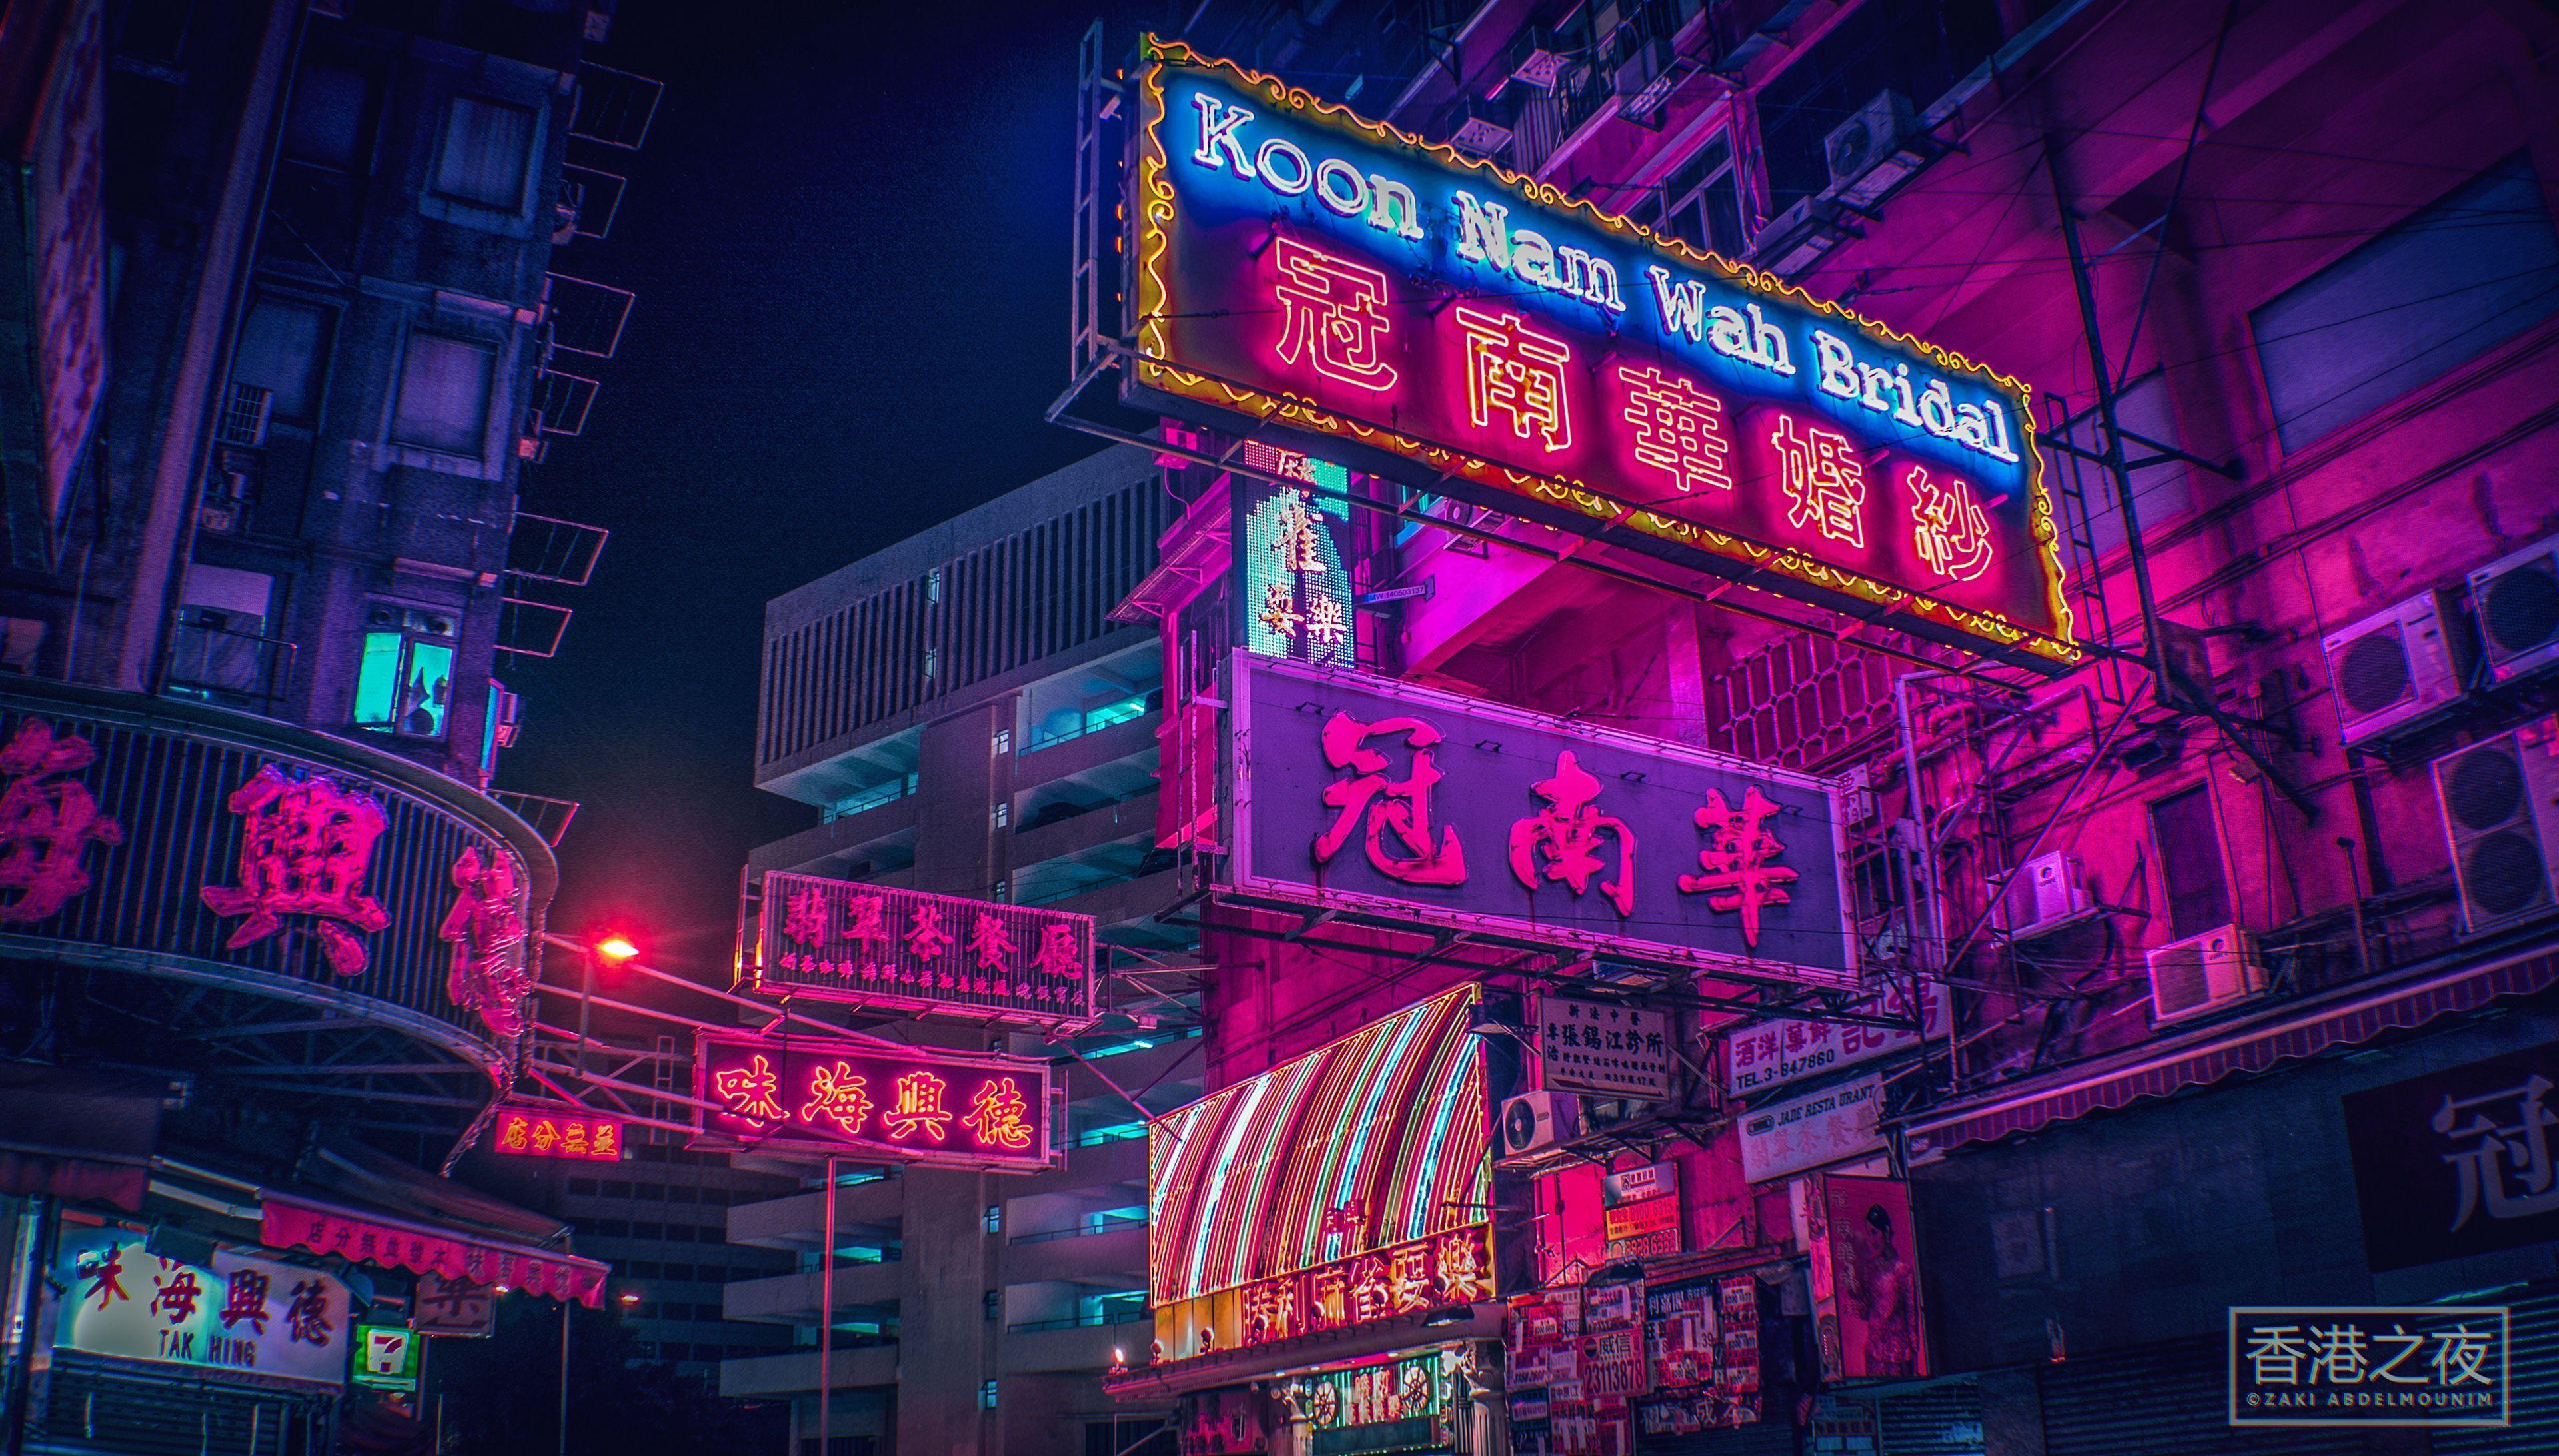 Hong Kong Neon Wallpapers - Top Free Hong Kong Neon Backgrounds ...